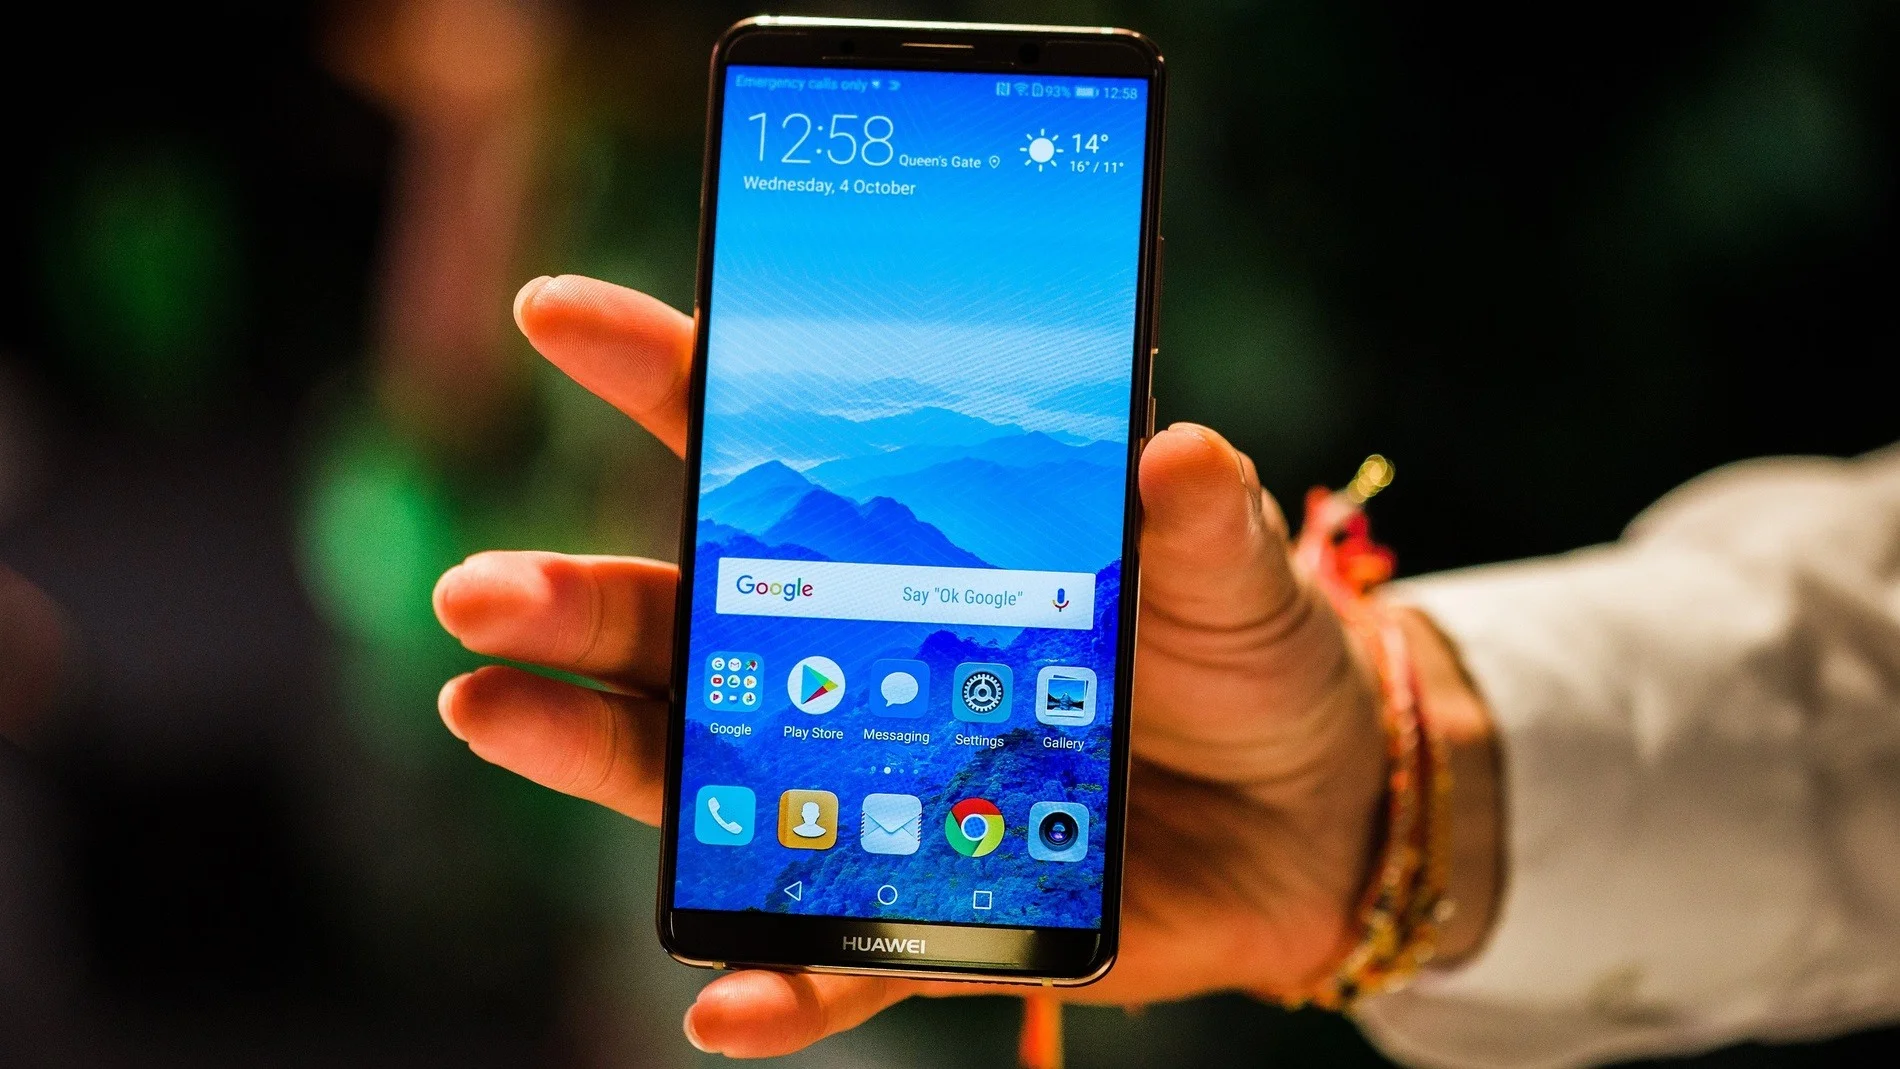 Несмотря на конфликт с США и лишение новых смартфонов сервисов Google, китайская компания Huawei все еще один из лидеров в производстве и продаже смартфонов. Особенно хорошо ей удаются модели с отличными камерами, а цены многих таких устройств ниже, чем у ближайших конкурентов Samsung и Apple. В этой подборке собраны семь лучших, на наш взгляд, смартфонов компании, которые можно купить прямо сейчас и не пожалеть.